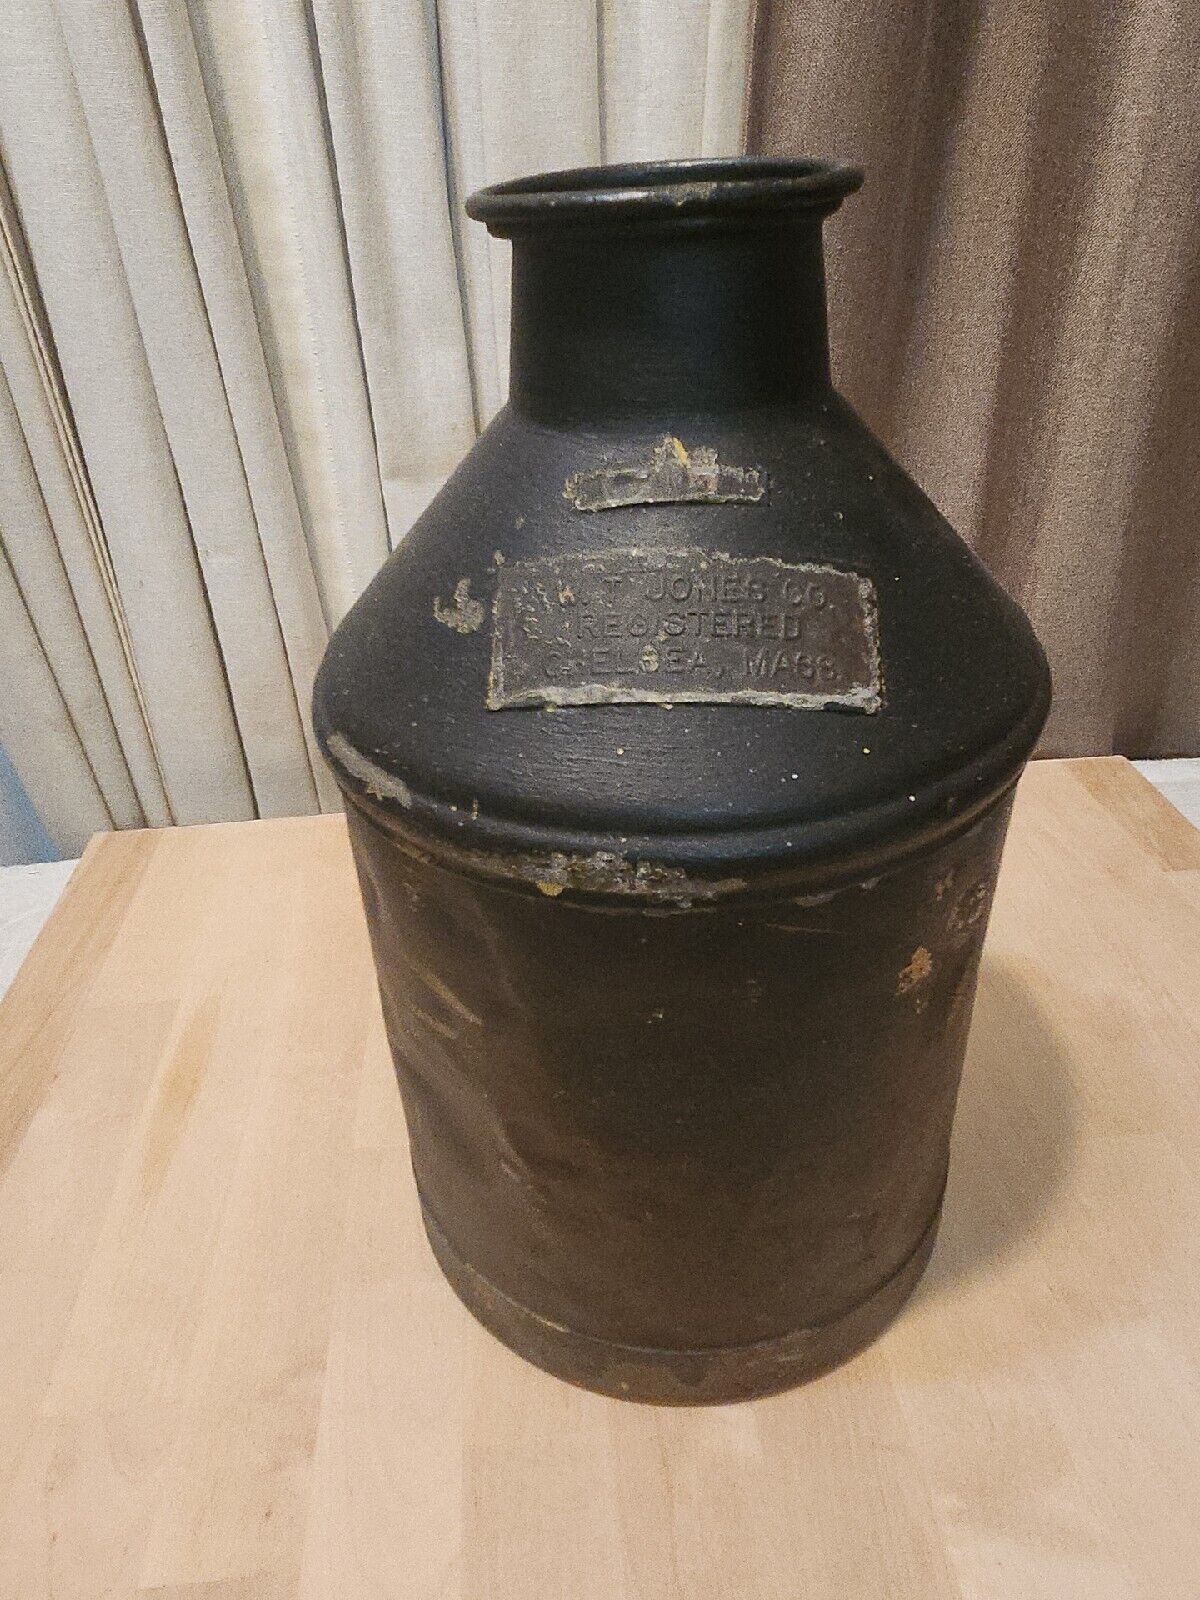 TREQ Milk Bottle W T Jones Co Dairy Chelsea MA SUFFOLK COUNTY 1936